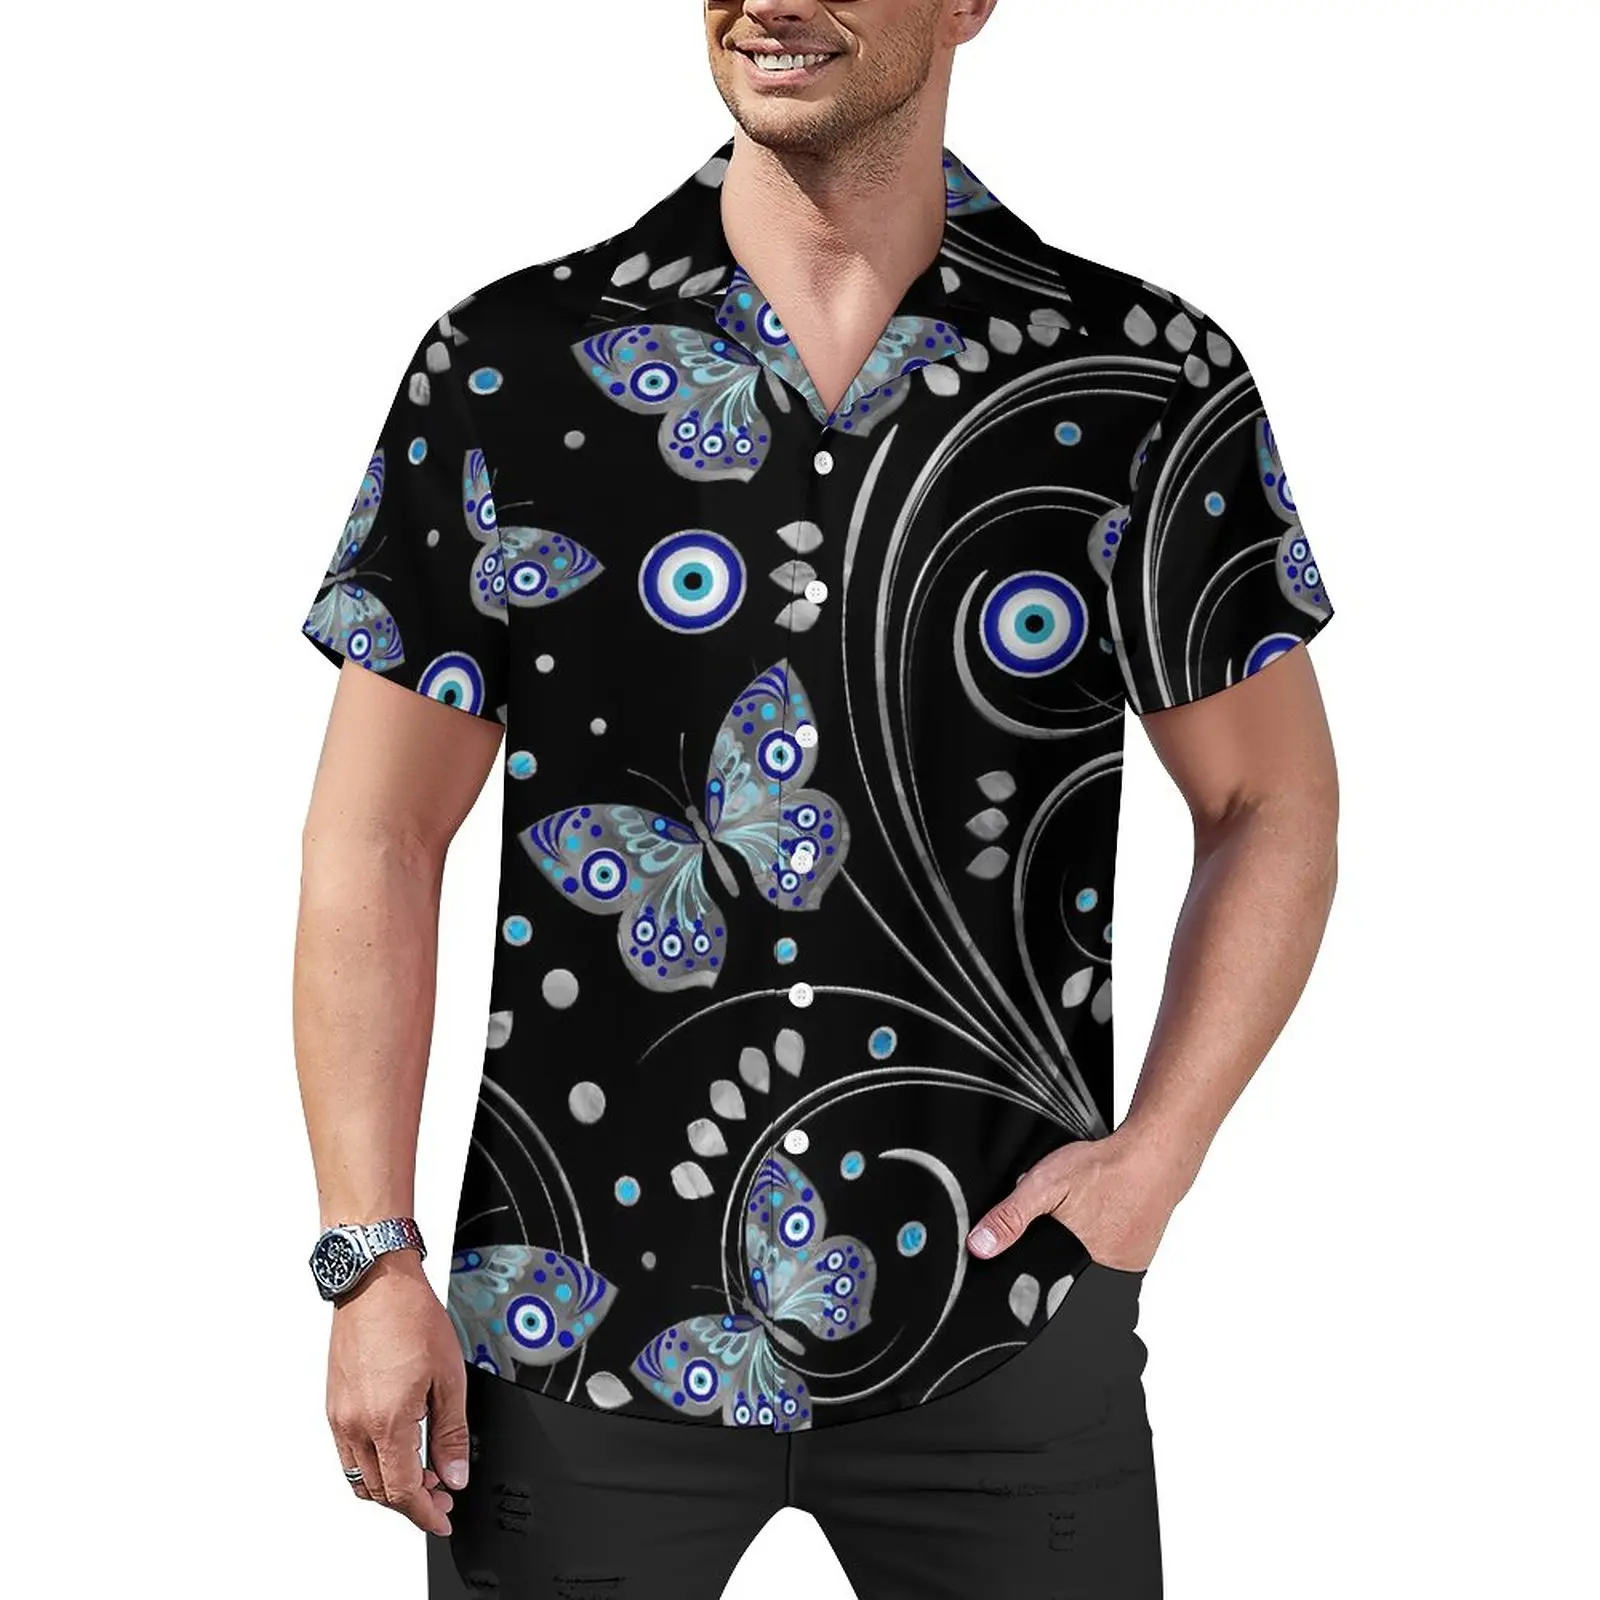 

Повседневная рубашка с принтом сглаза и бабочек, Пляжная Свободная рубашка с абстрактным Изображением Животных, блузки в стиле гавайской эстетики, Топ оверсайз с коротким рукавом и графическим принтом